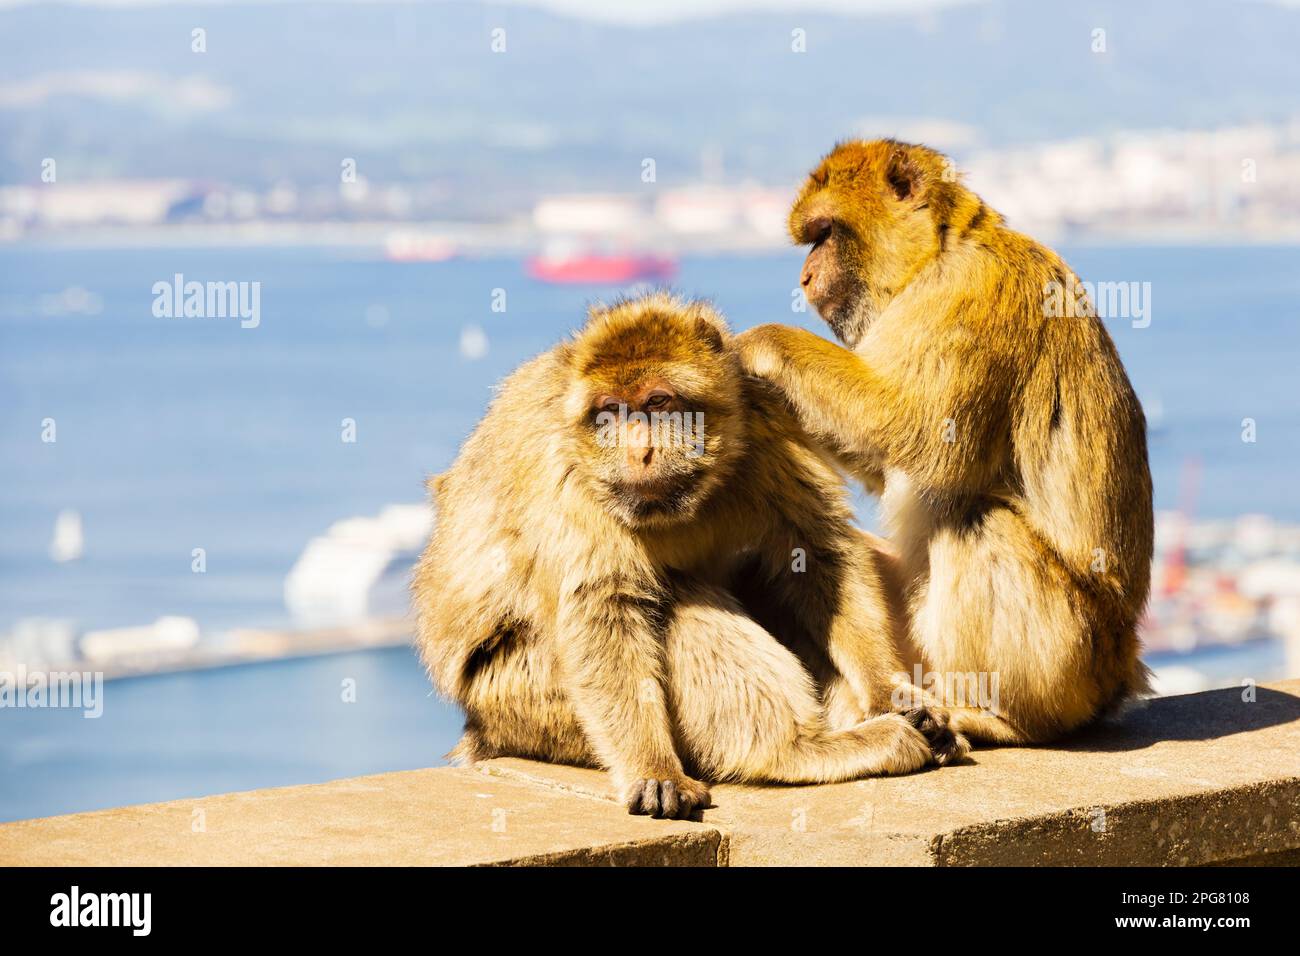 Le célèbre toilettage Barbary Macaques. Territoire britannique d'outre-mer de Gibraltar, le Rocher de Gibraltar sur la péninsule ibérique. Banque D'Images